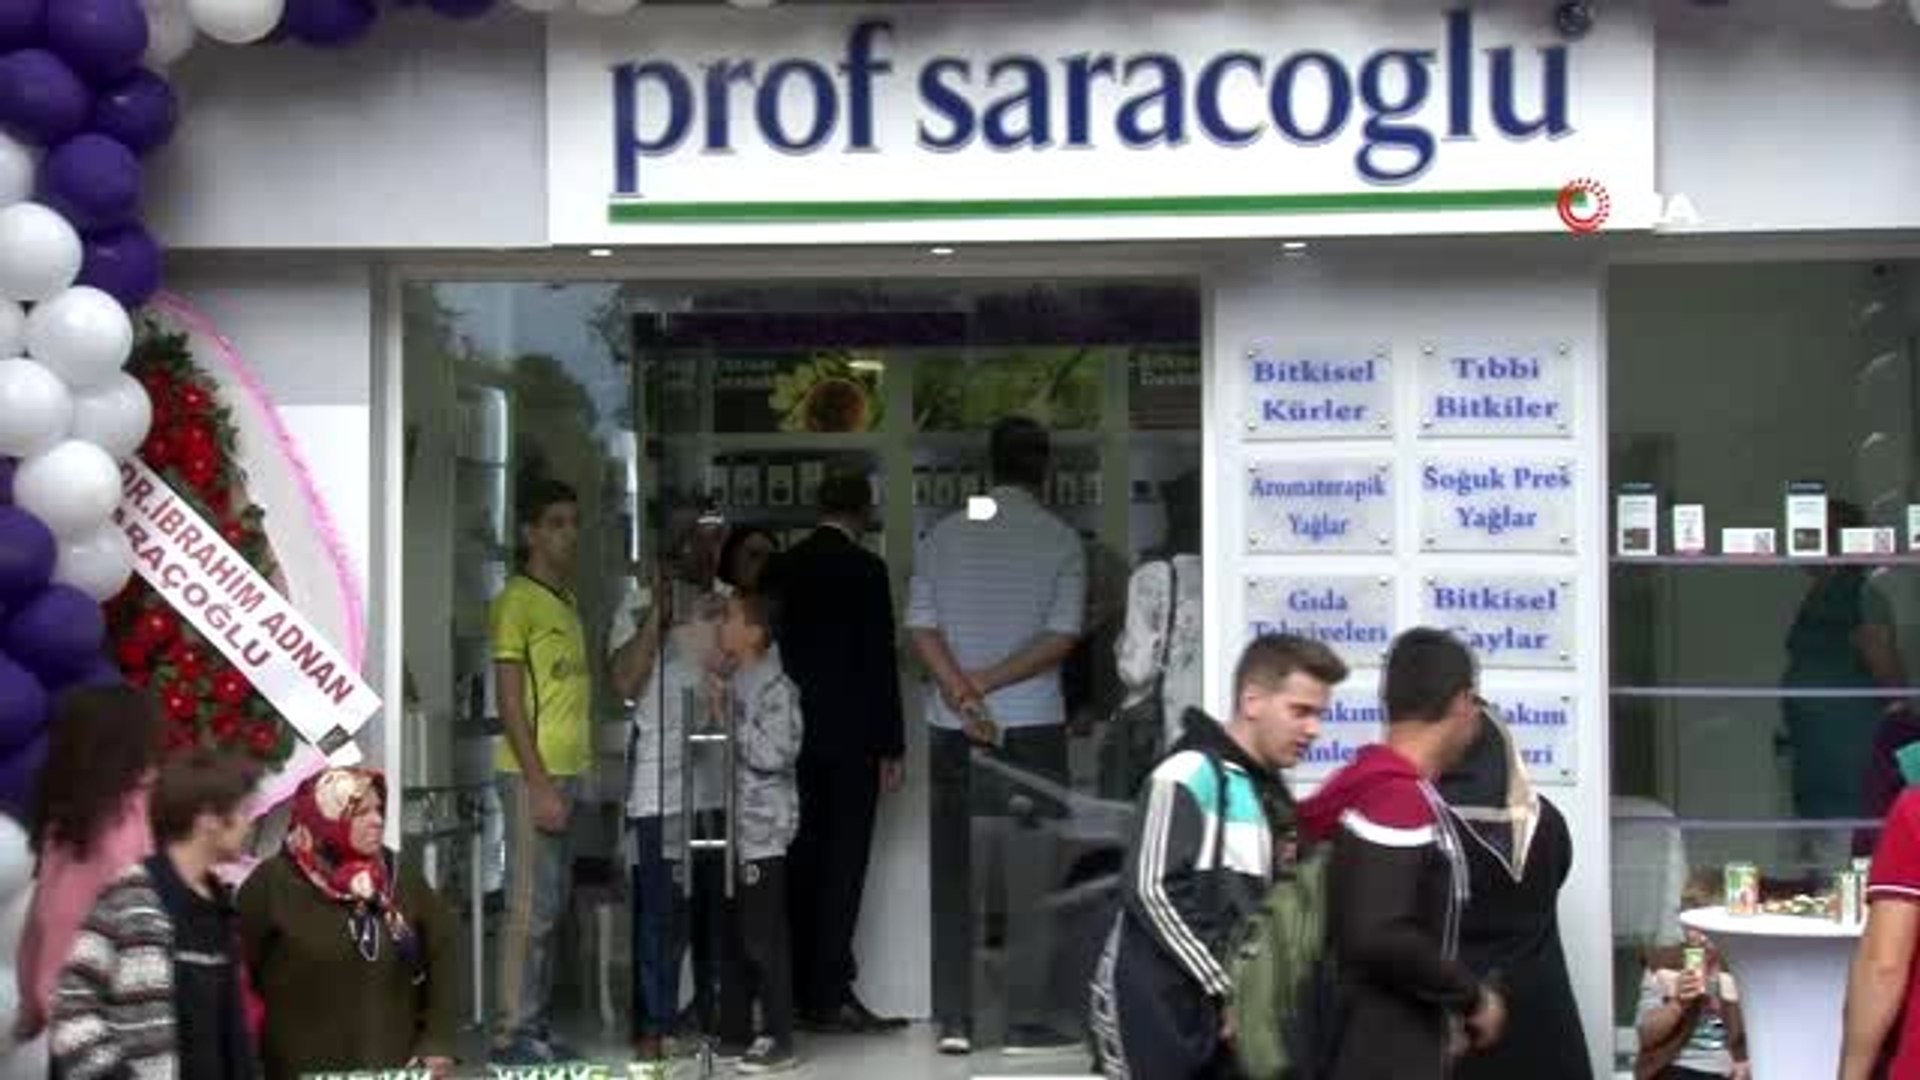 Bursa'da Saraçoğlu'na yoğun ilgi - Dailymotion Video